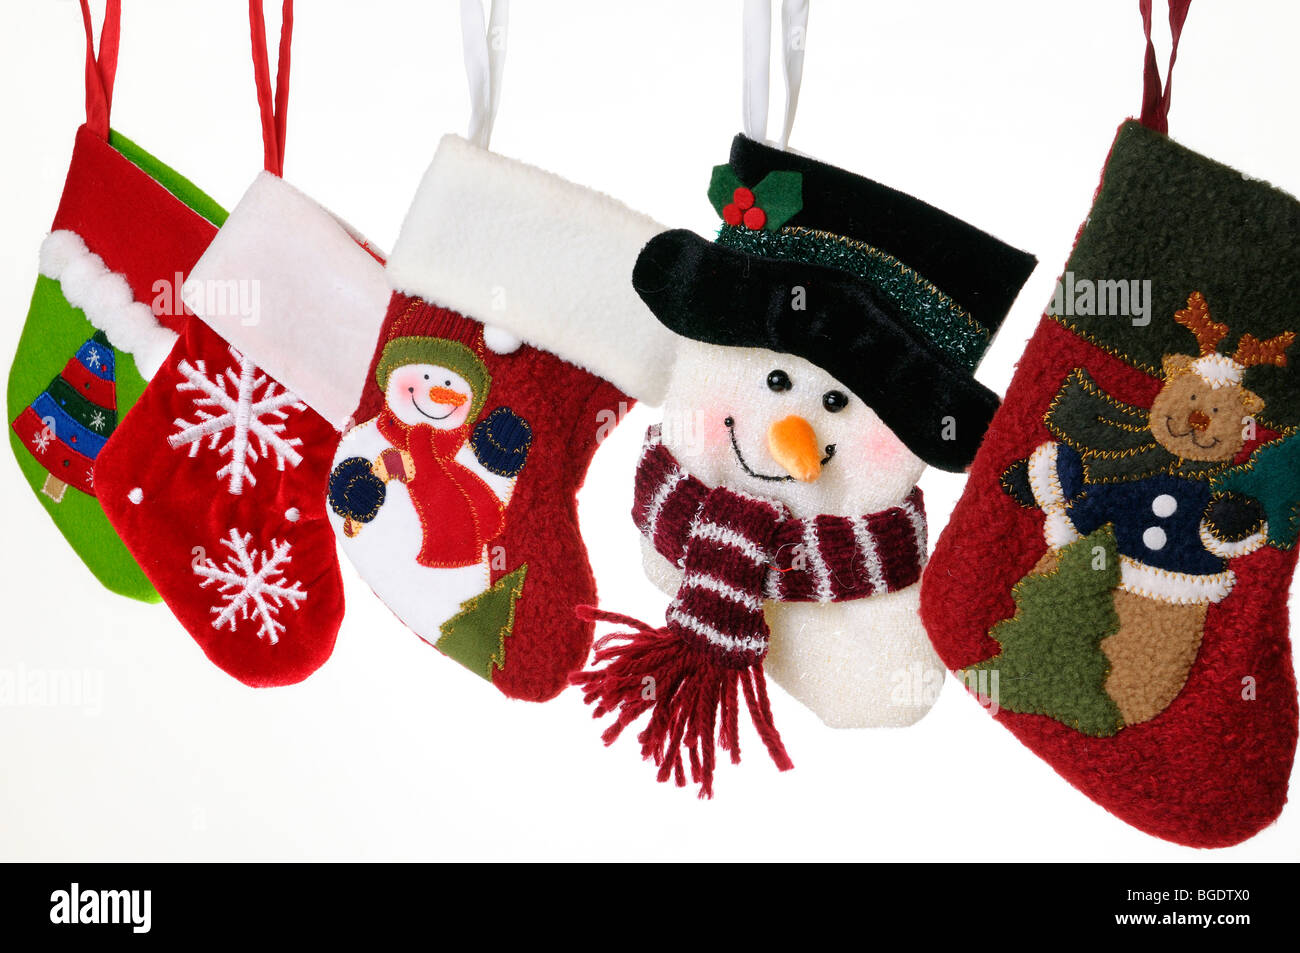 Collezione unica di calze di Natale con pupazzi di neve, Teddy bear,  fiocchi di neve, decorate albero, appeso su sfondo bianco tutti sharp Foto  stock - Alamy